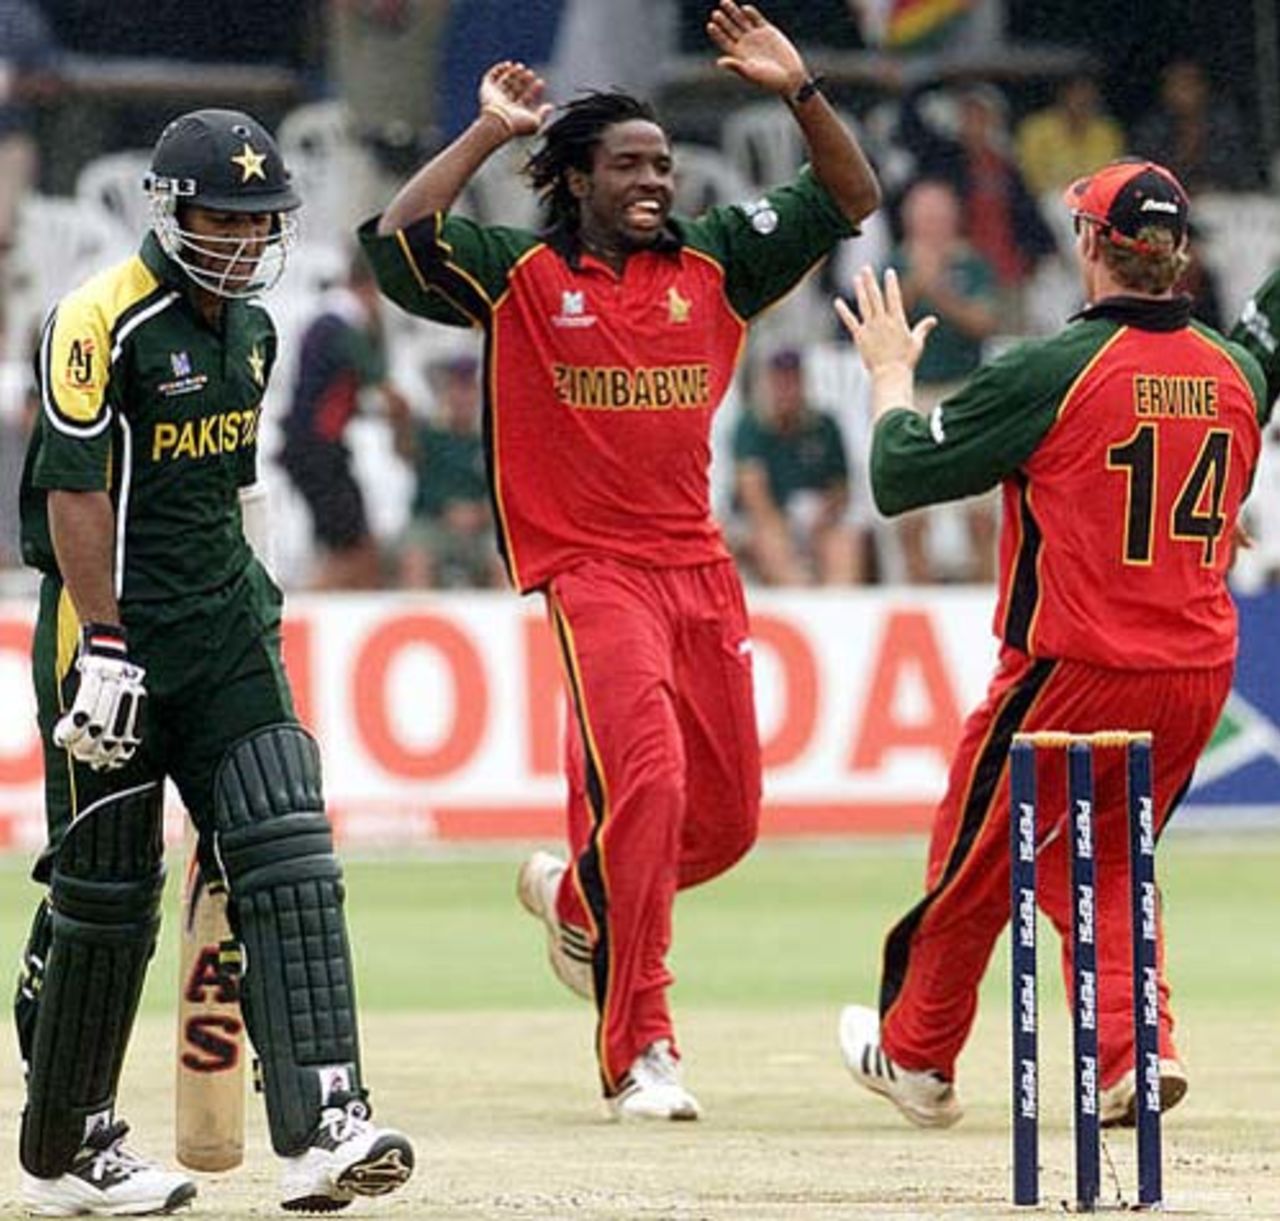 World Cup, 2003 - Pakistan v Zimbabwe at Bulawayo, 4th March 2003